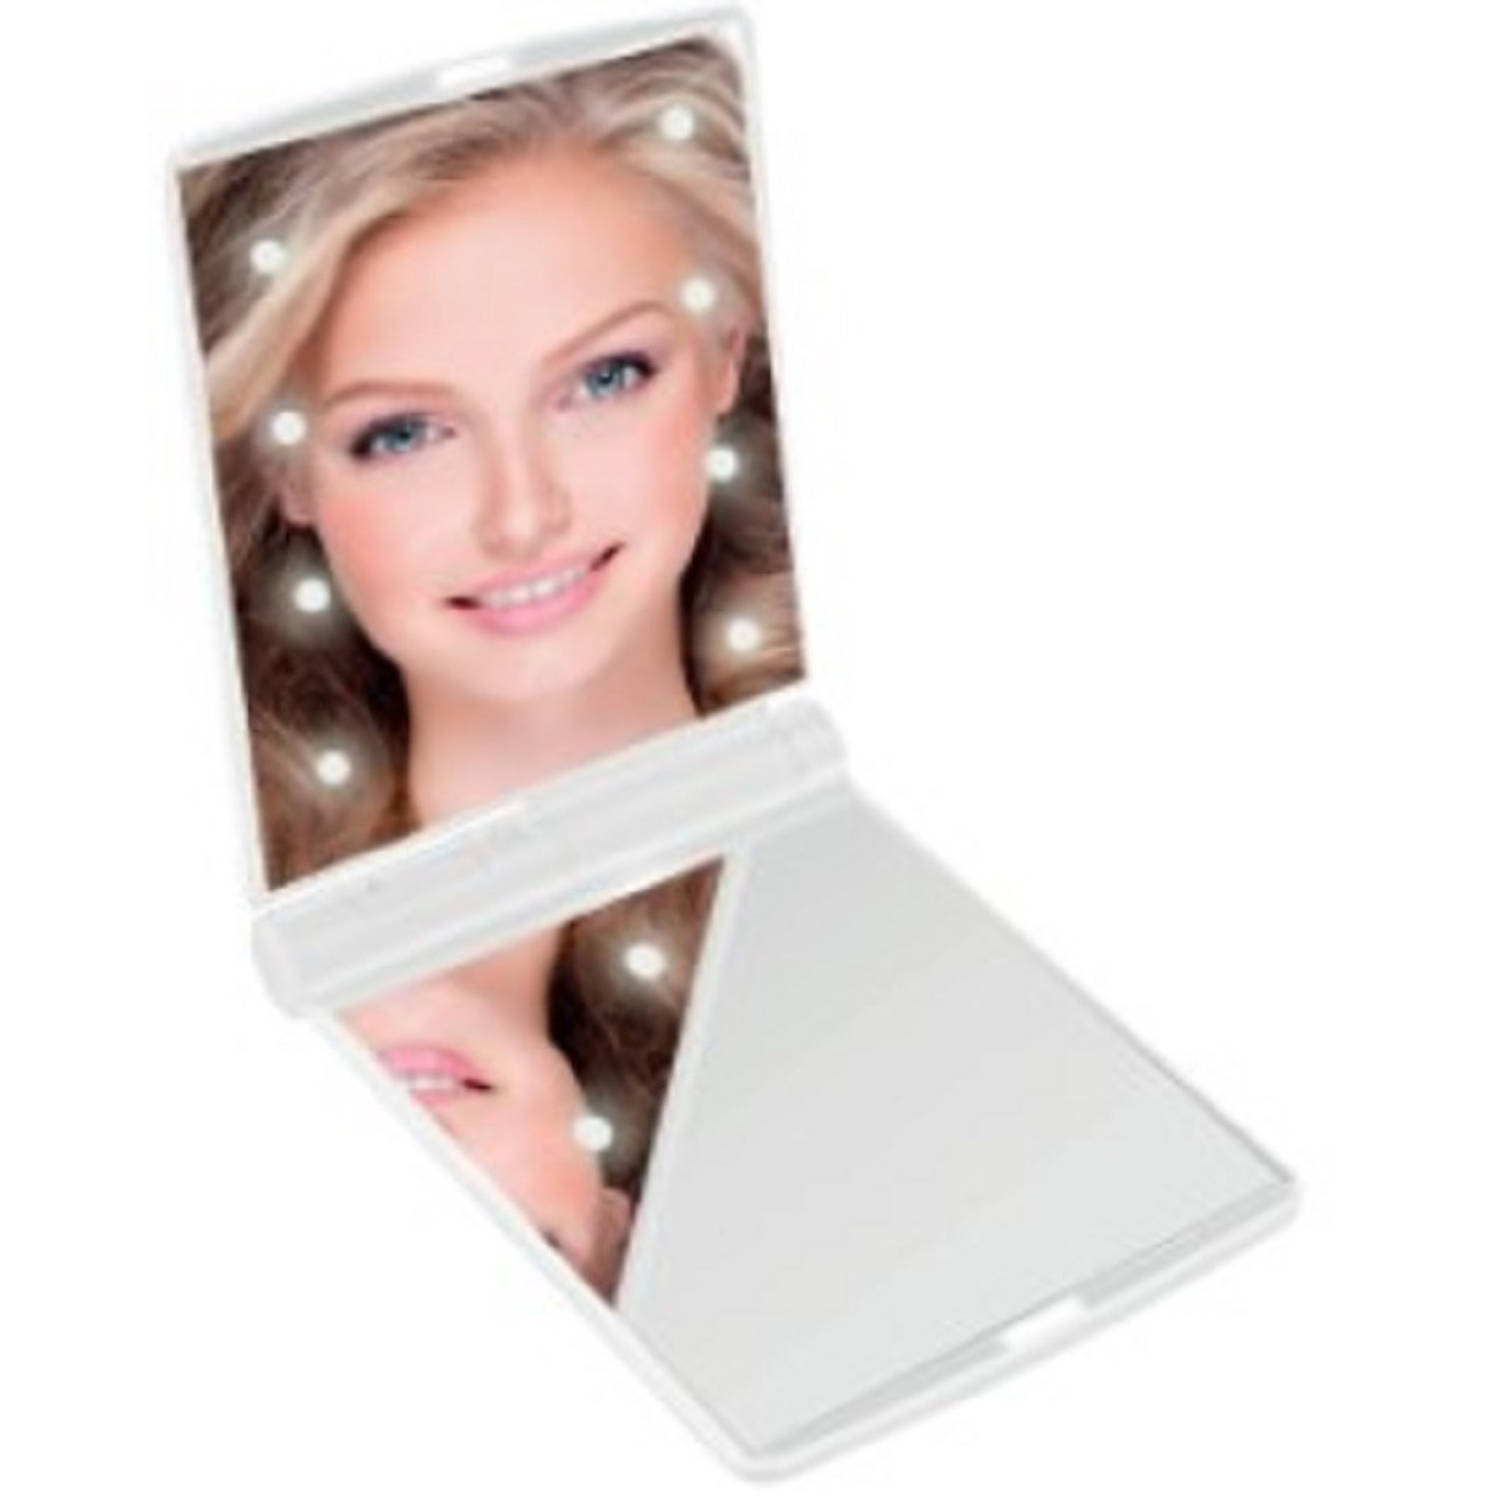 LED Make-up spiegel-handspiegel-zakspiegel wit 11,5 x 8,5 cm dubbelzijdig Make-up spiegeltjes